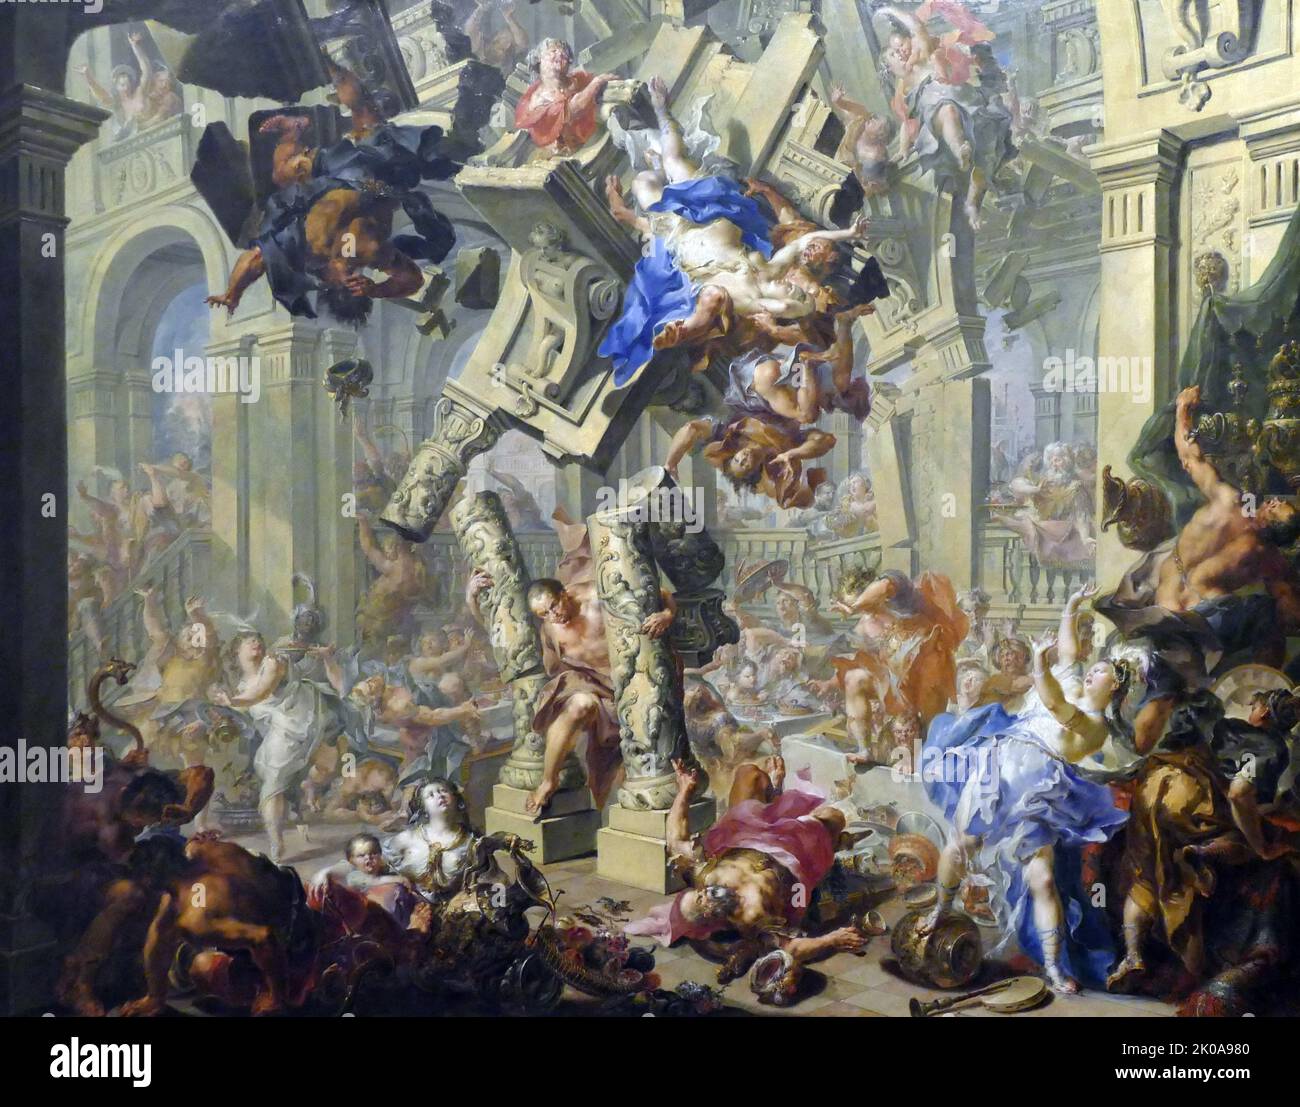 La vengeance de Samson, C1730-1740. Huile sur cuivre par Johann Georg Platzer (1704-1761), peintre et dessinateur autrichien prolifique Rococo Banque D'Images